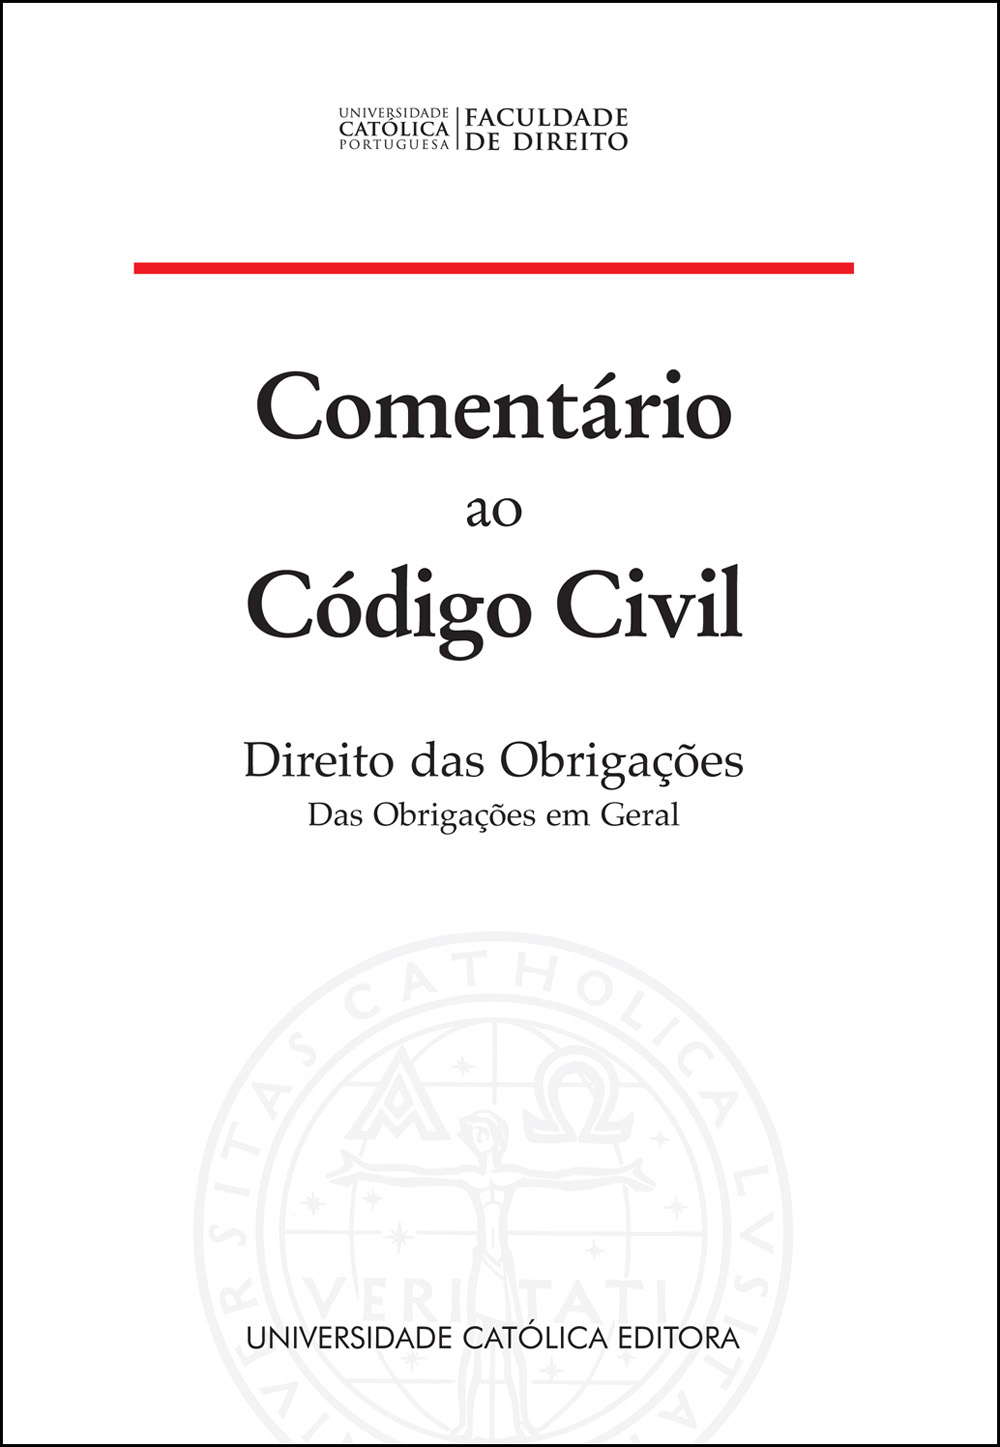 COMENTÁRIO AO CÓDIGO CIVIL - Direito das Obrigações. Das Obrigações em Geral - Universidade Católica Editora